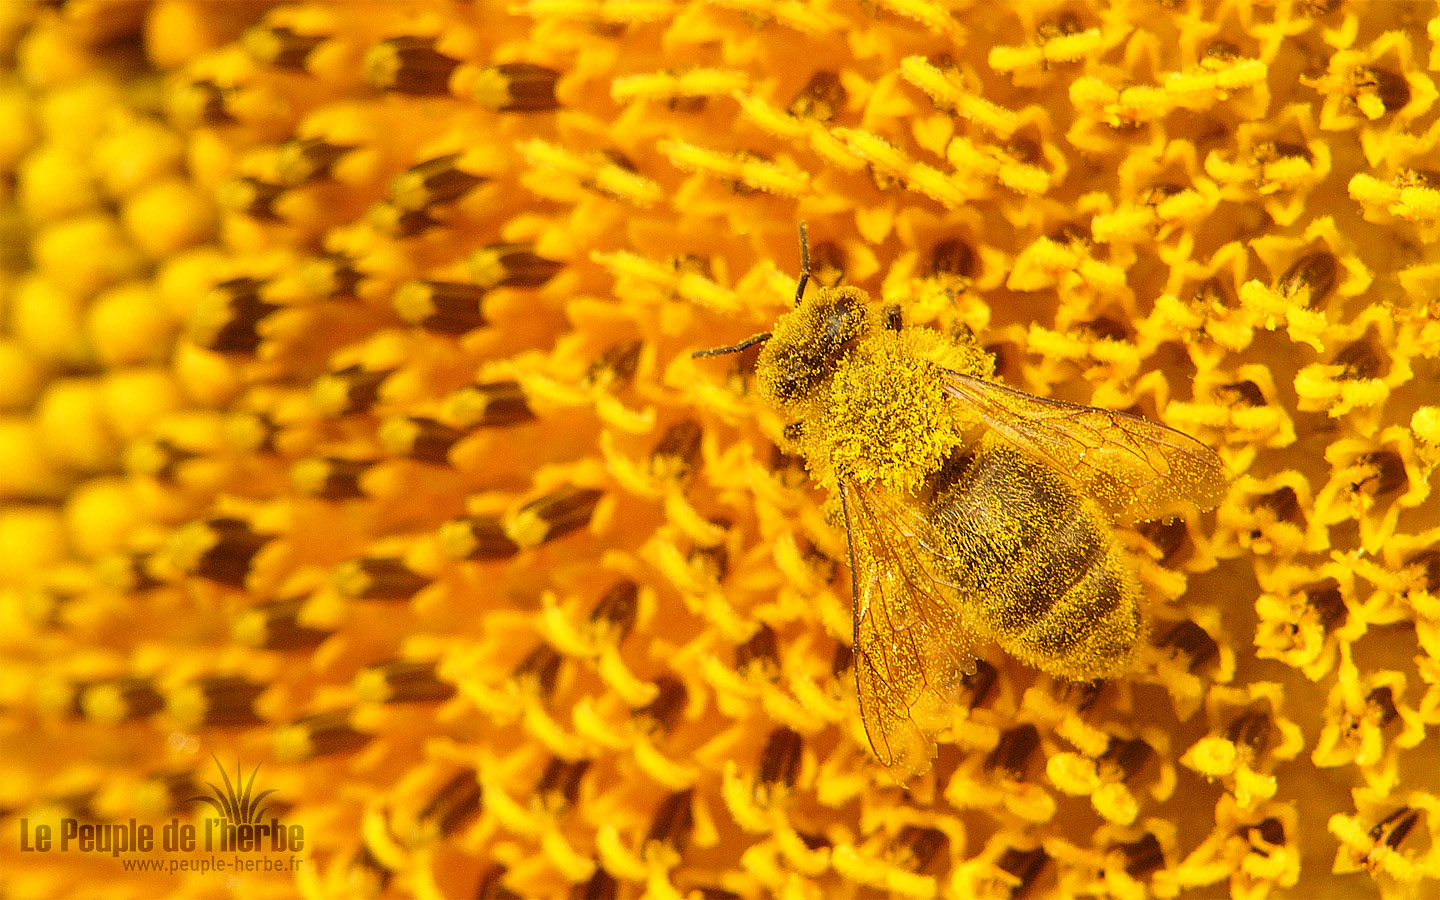 Fond d'écran abeille 1440x900 : Abeille domestique